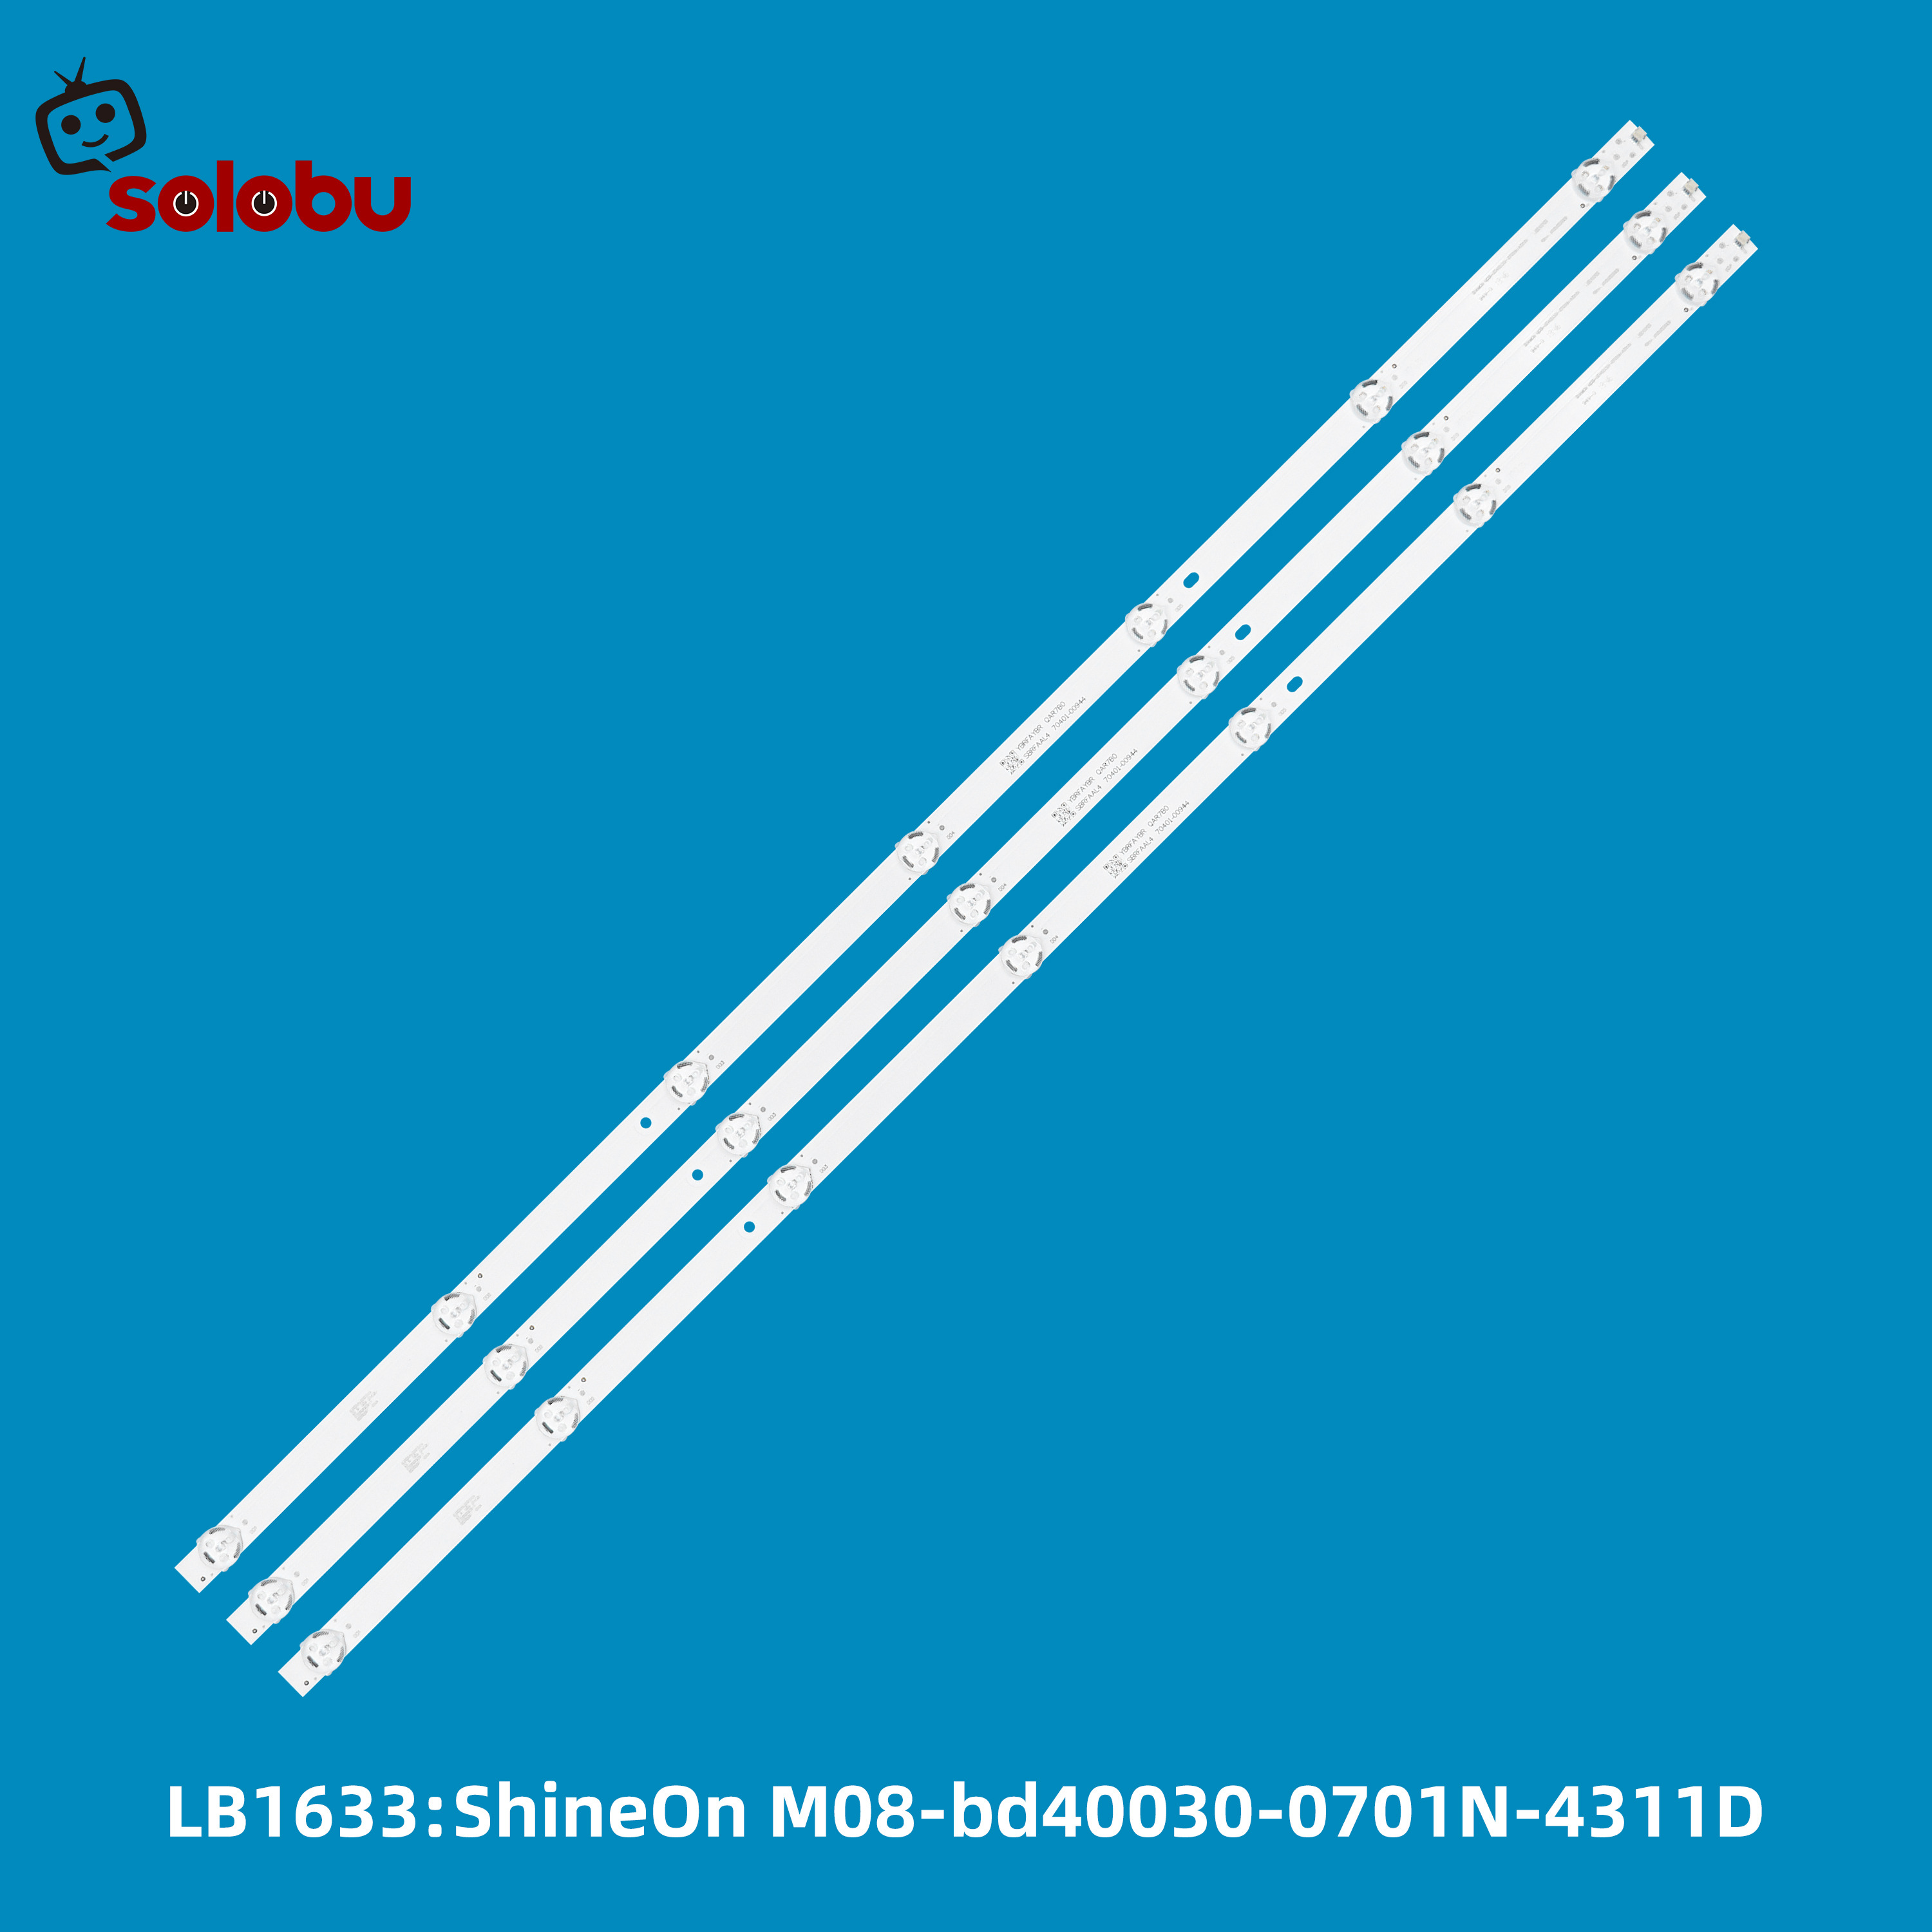 ShineOn M08-BD40030-0701N-4311D